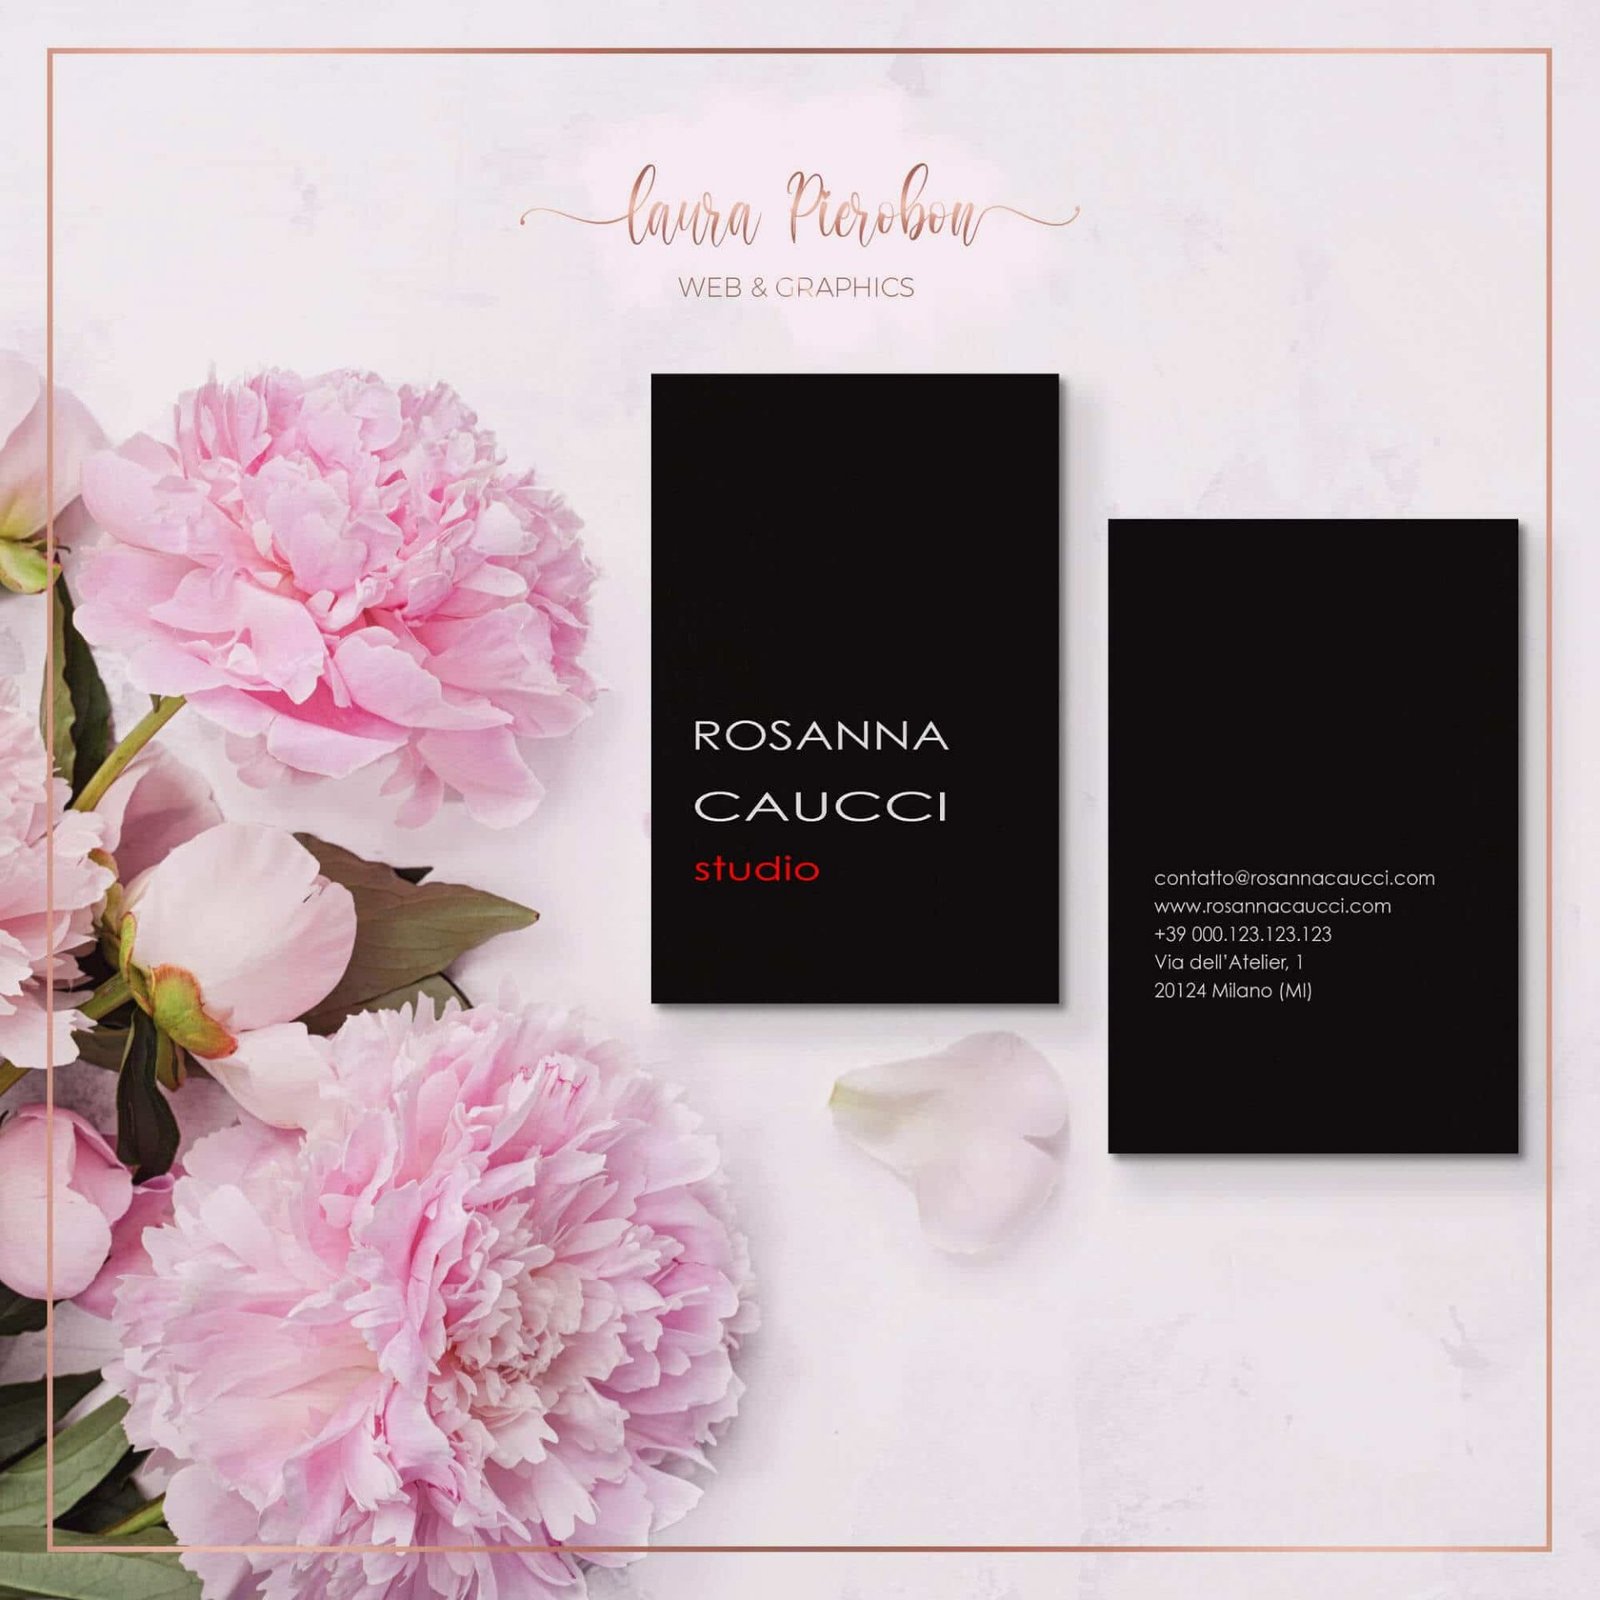 Portfolio - Biglietti da visita Rosanna Caucci © Laura Pierobon – Web & Graphics